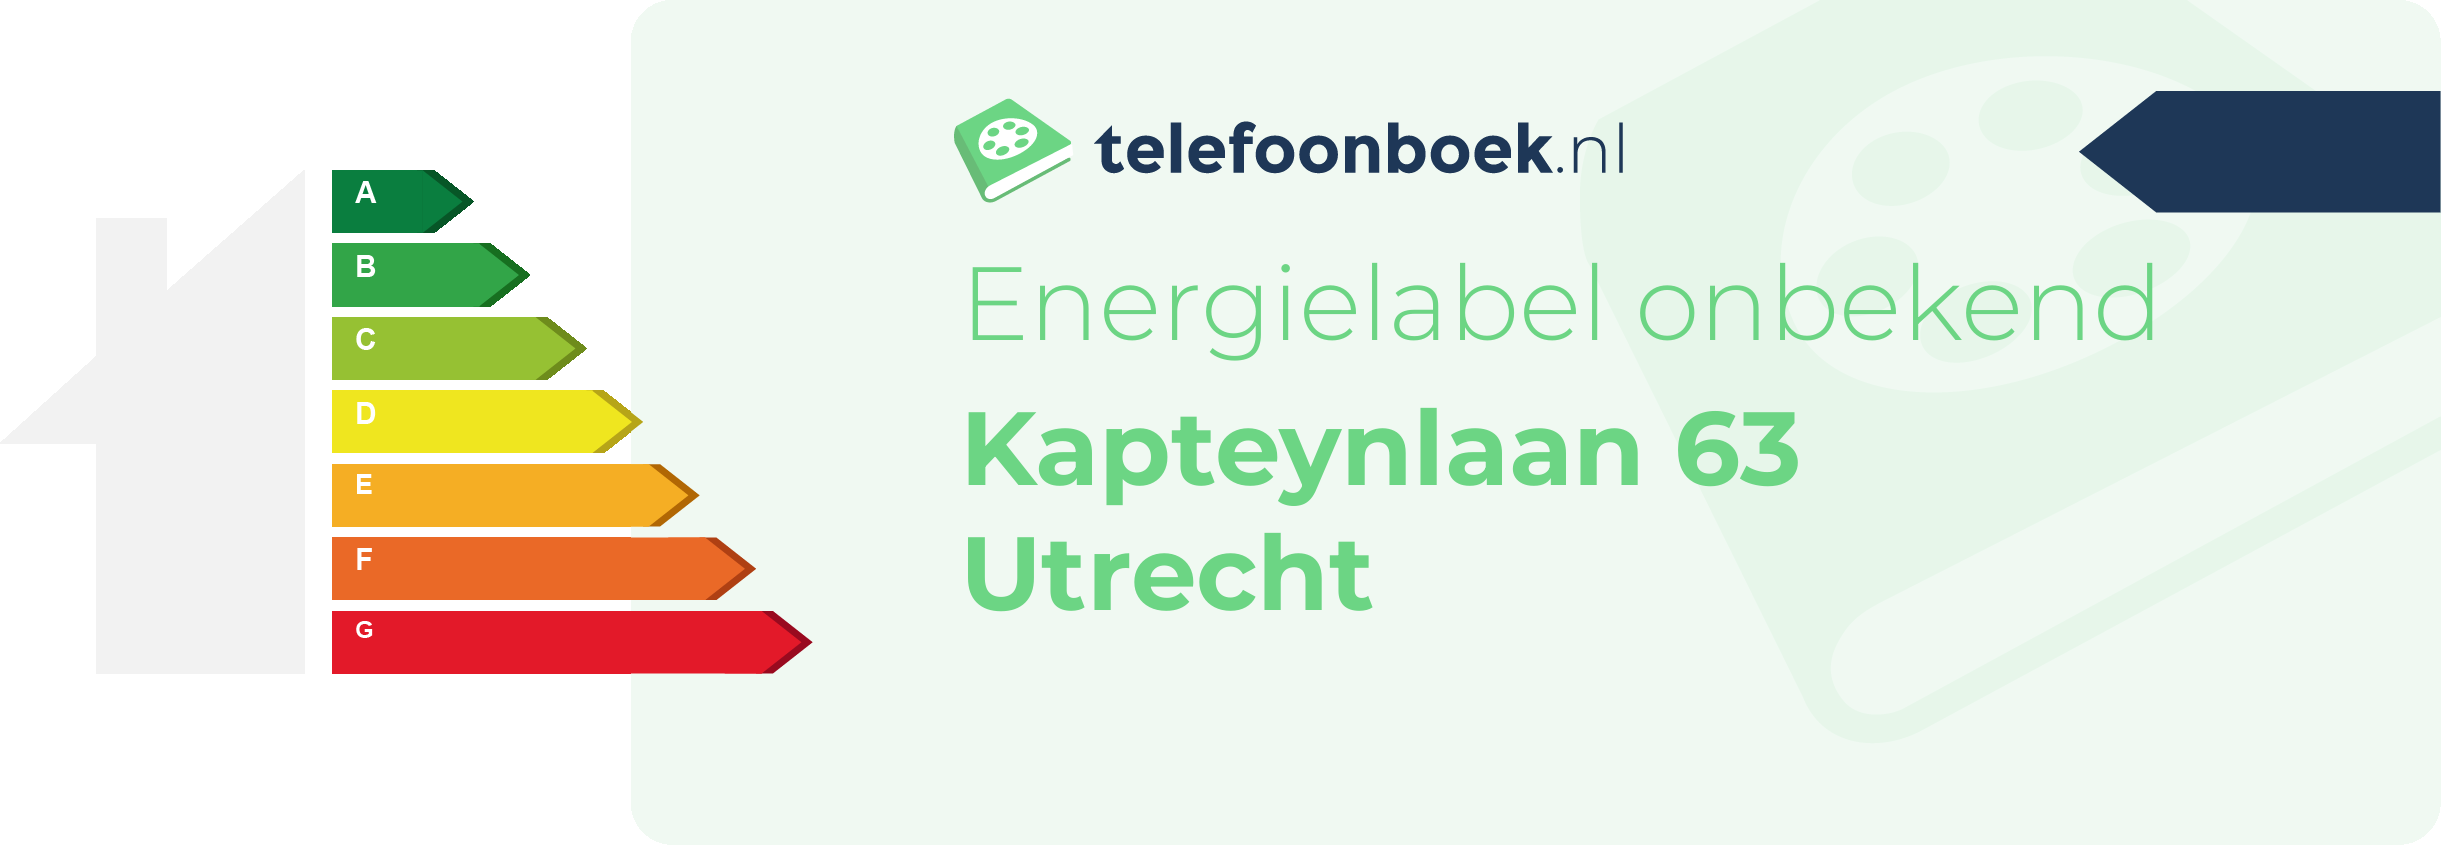 Energielabel Kapteynlaan 63 Utrecht